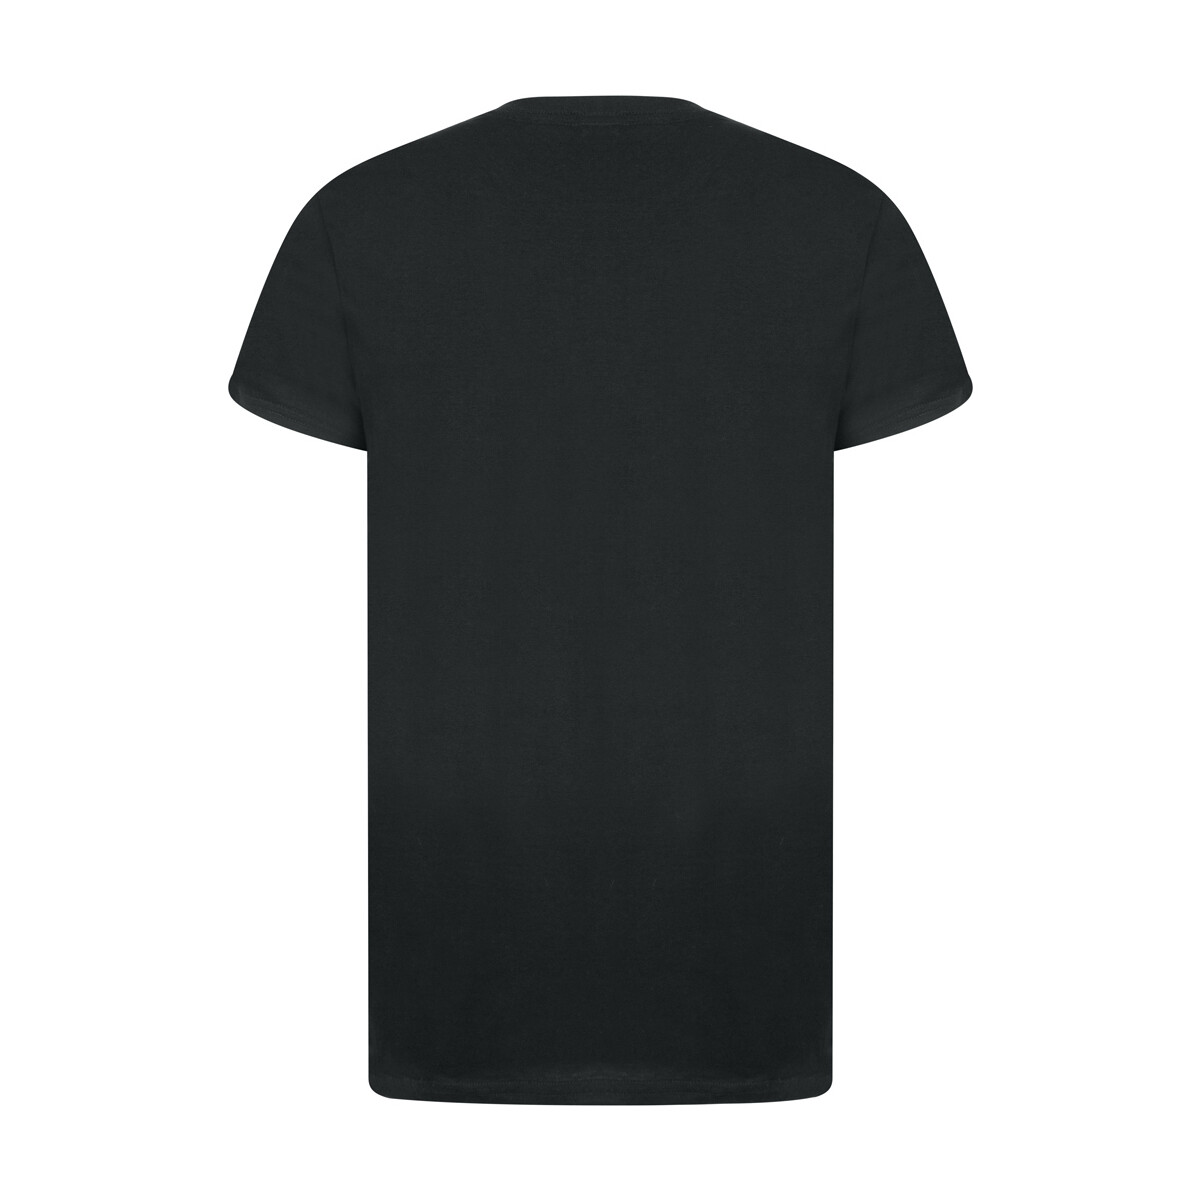 Vêtements Homme T-shirts manches longues Casual Classics Eco Spirit Noir